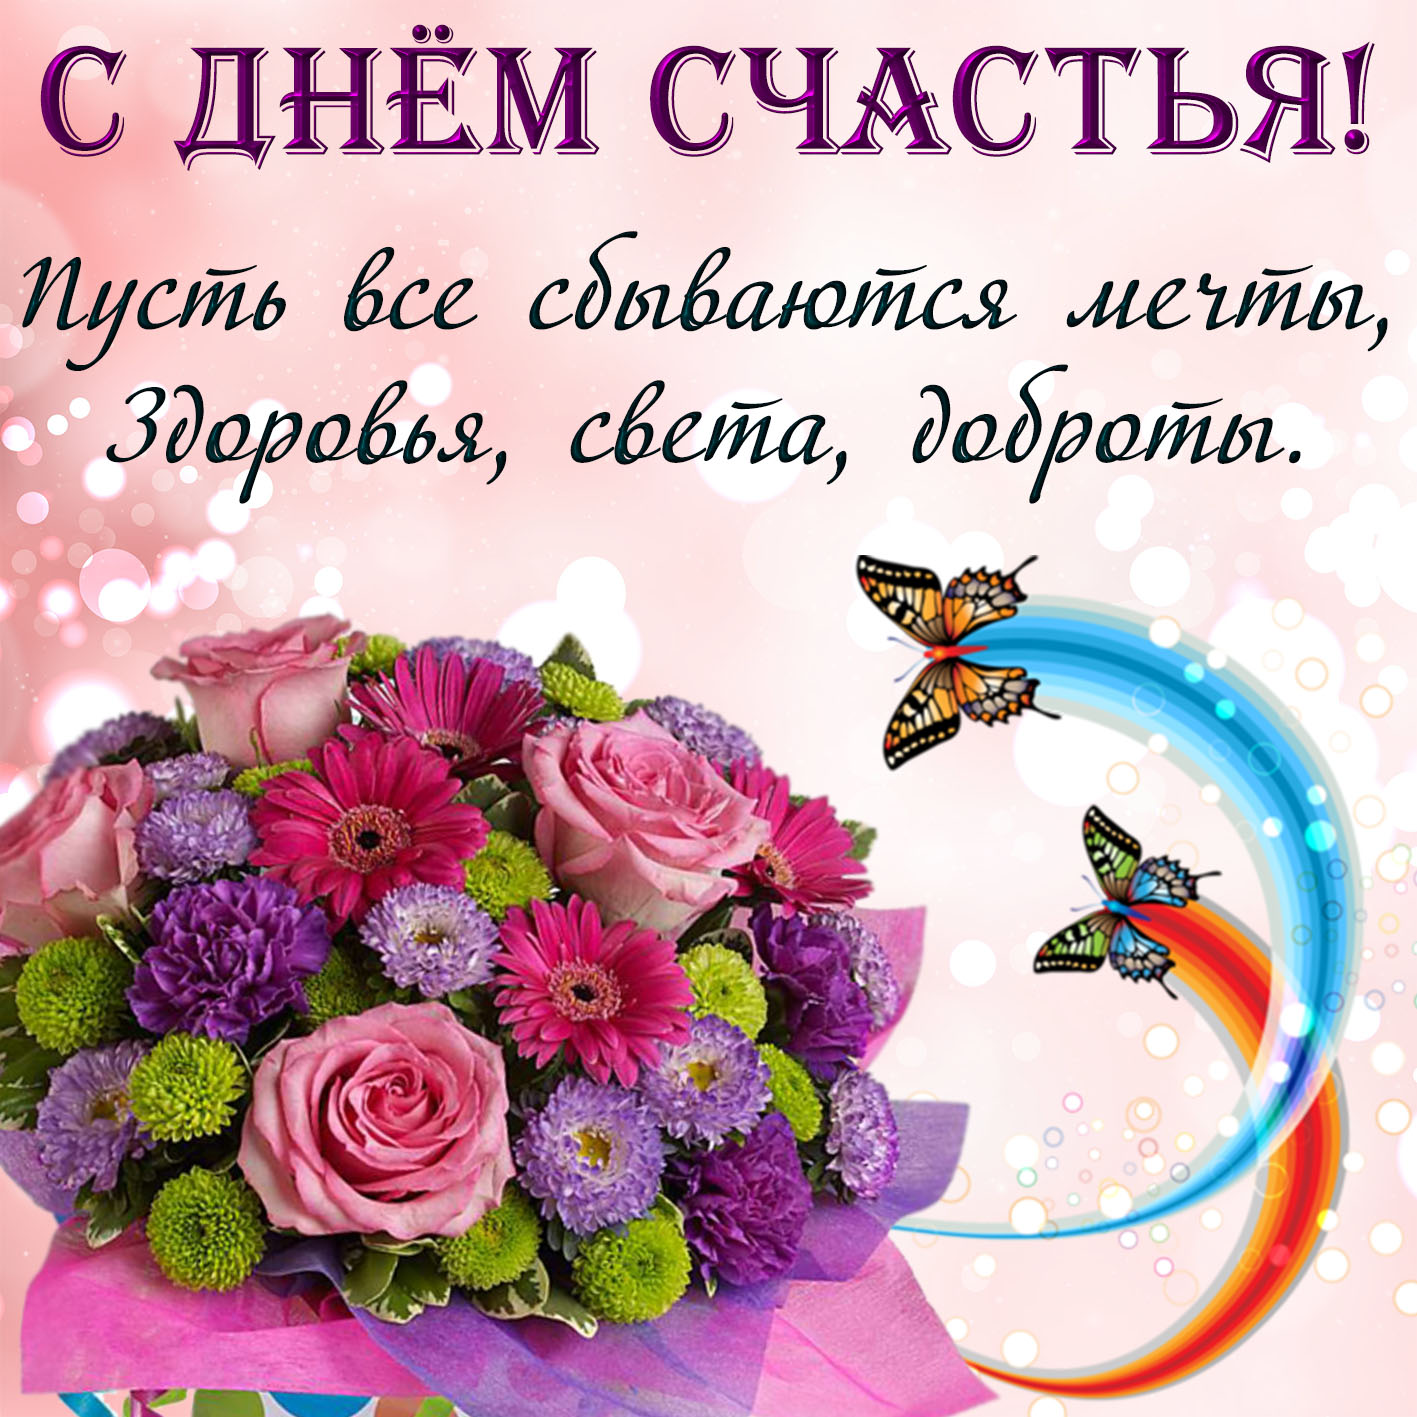 21 февраля праздник день женского счастья. День женского счастья. С днем счастья открытки. Поздравления с днём женского счастья. С днём счастья поздравления красивые.